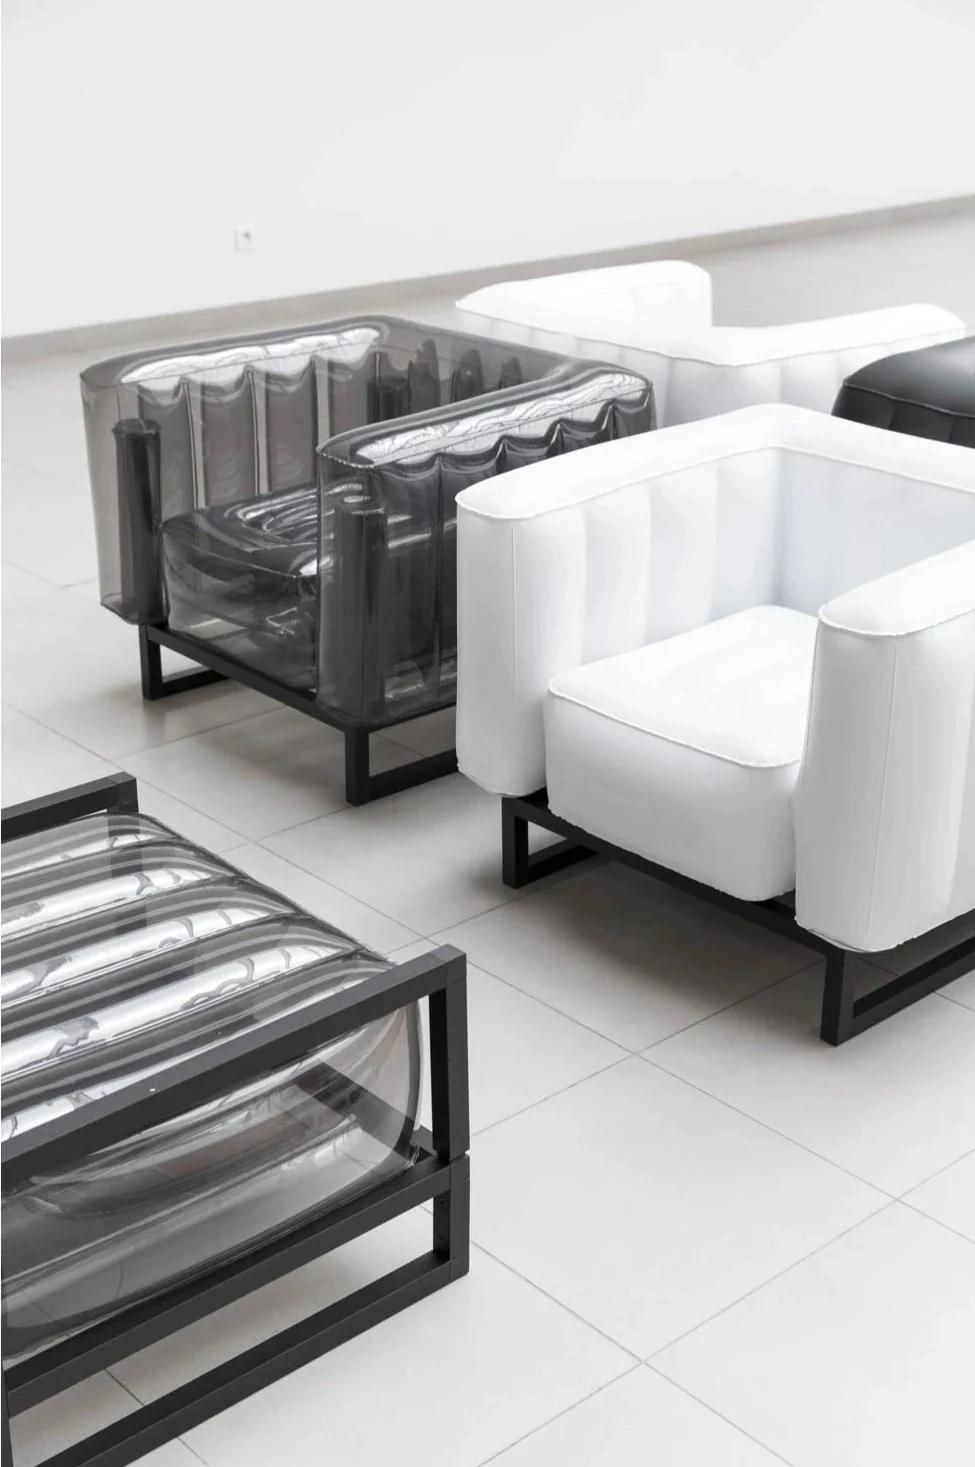 Von Mojow

Ein moderner Sessel mit zeitlosem französischem Design, der aus besonders widerstandsfähigen und umweltfreundlichen Materialien hergestellt wird. Der schlichte Stil bringt einen einzigartigen und modernen Look in Ihr Zuhause.